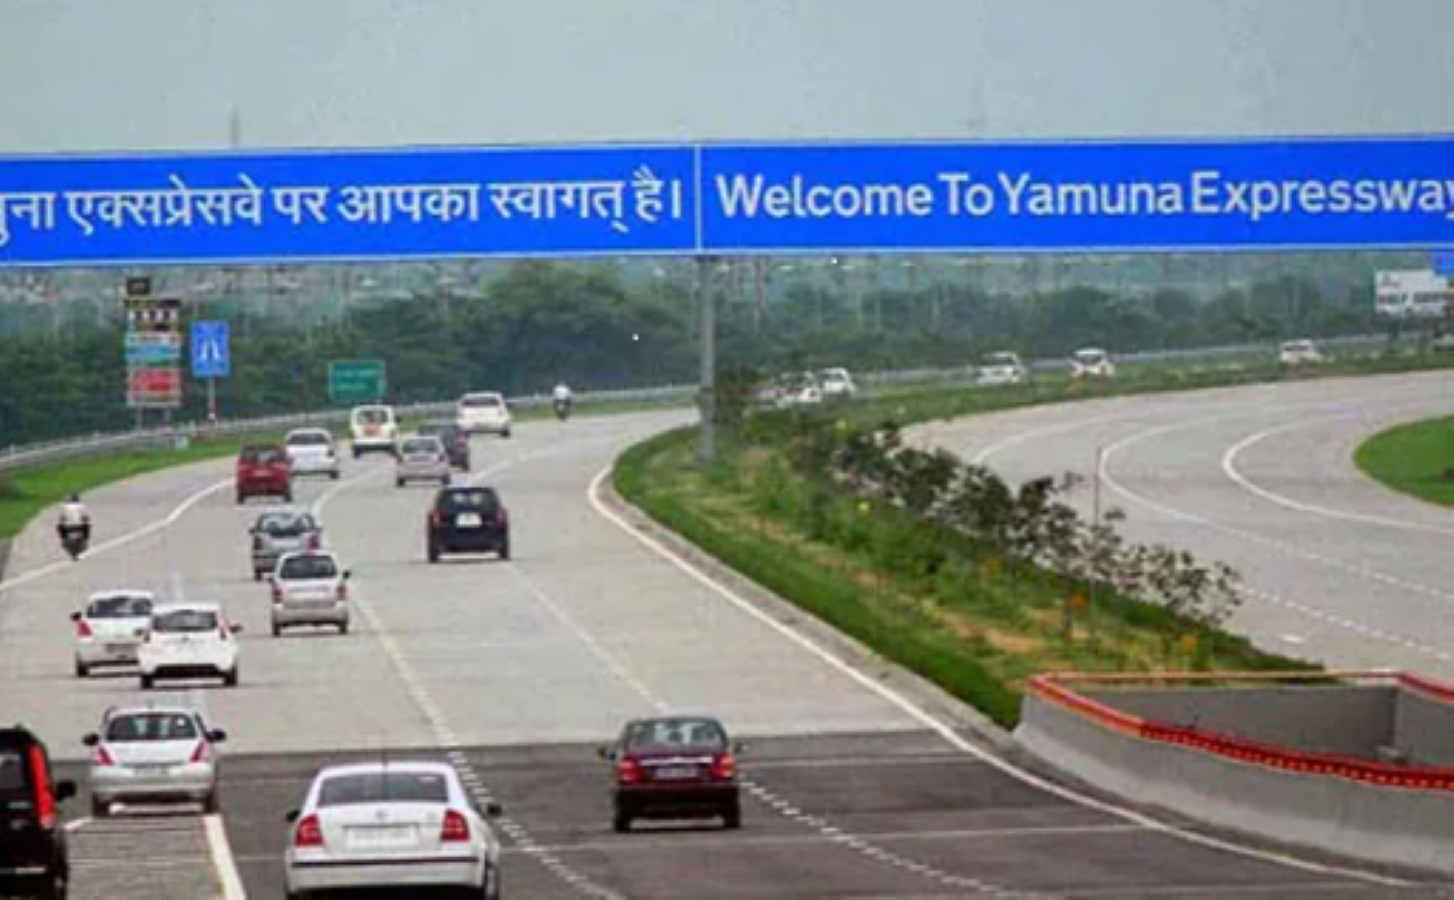 Yamuna Expressway News: यमुना एक्सप्रेसवे बना रियल एस्टेट निवेशकों के लिए आकर्षण का केंद्र